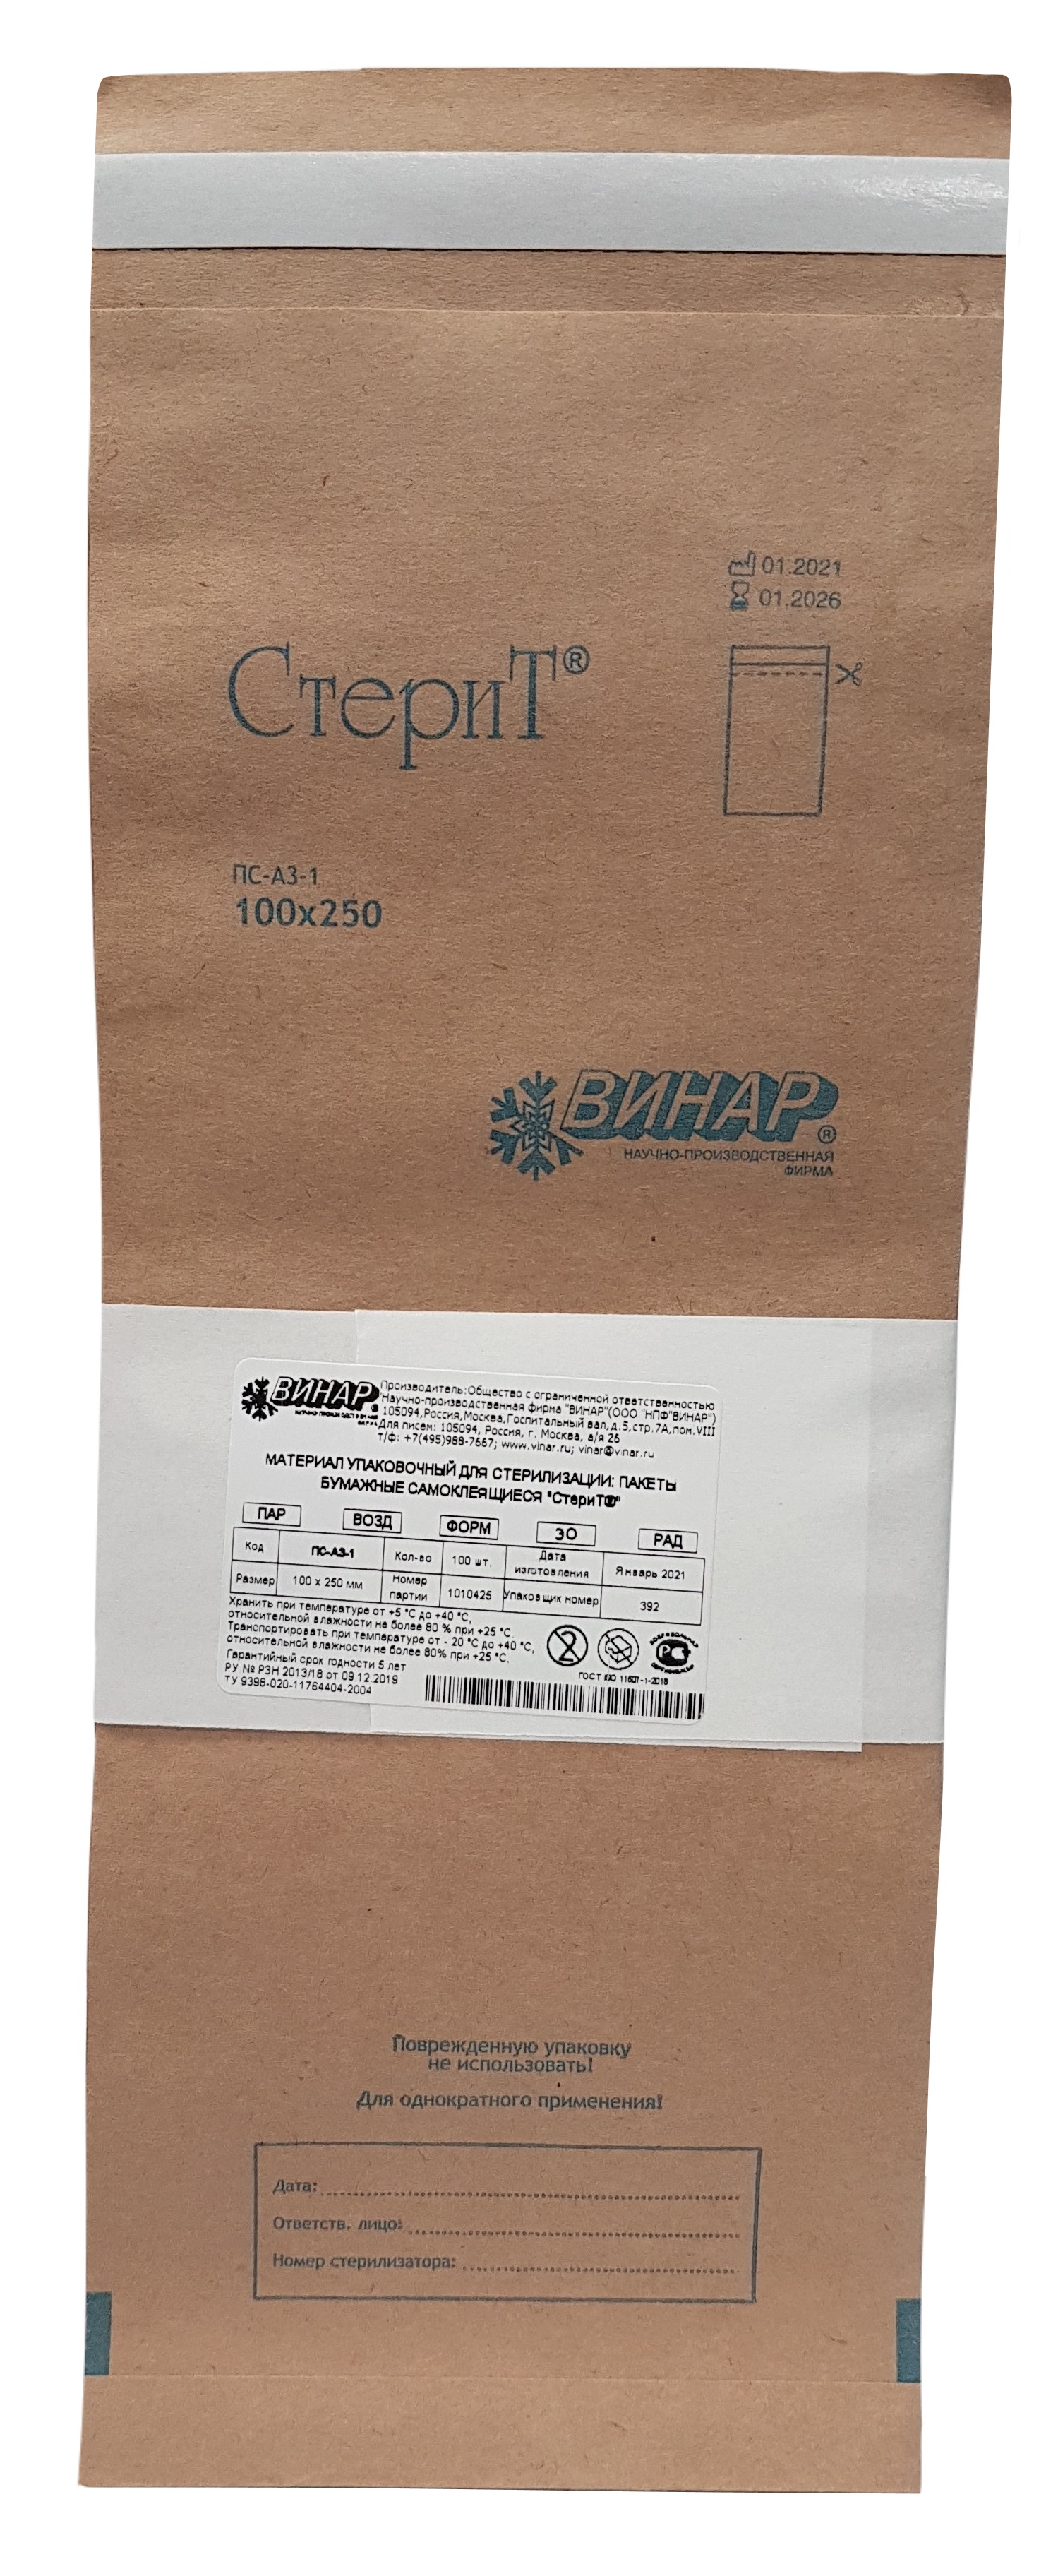 Пакеты бумажные для стерилизации самоклеящиеся СтериТ ПС-АЗ-1, Винар,100х250мм. 100 шт.